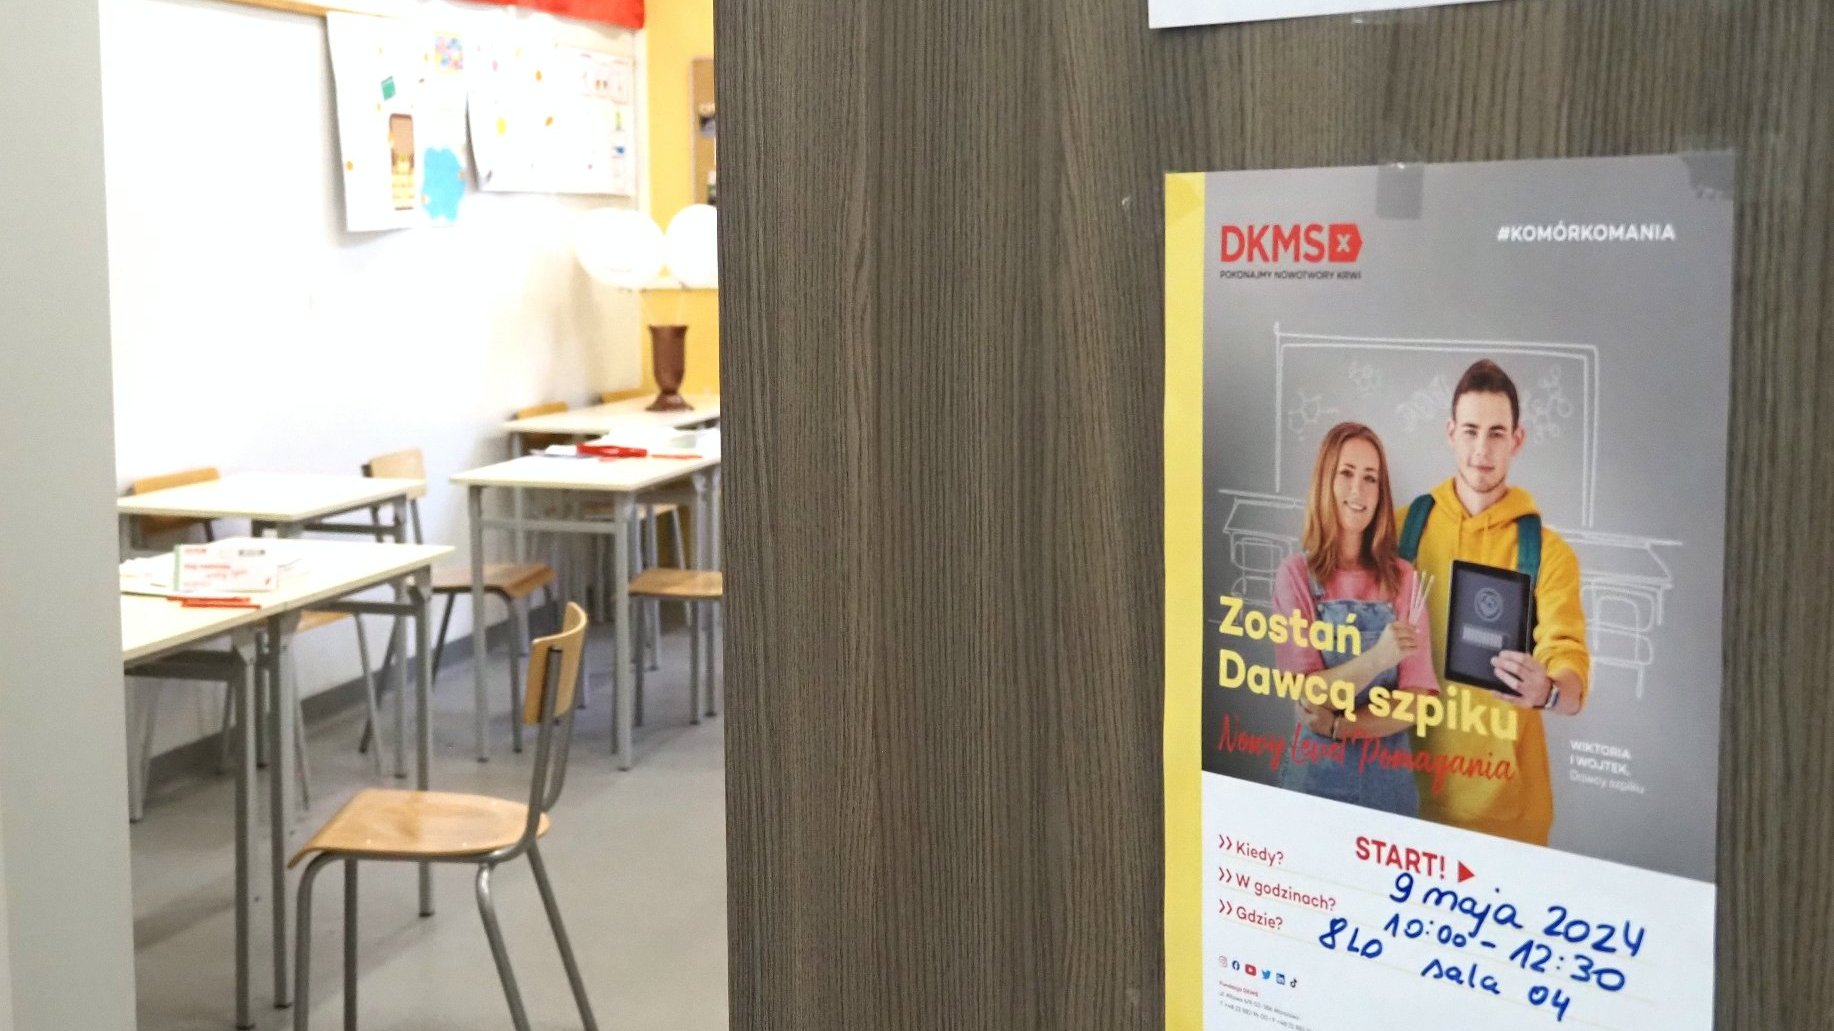 Zdjęcie przedstawia otwarte drzwi do sali lekcyjnej. Na drzwiach wisi plakat z informacją o akcji. Wewnątrz klasy widać ławki i krzesła.